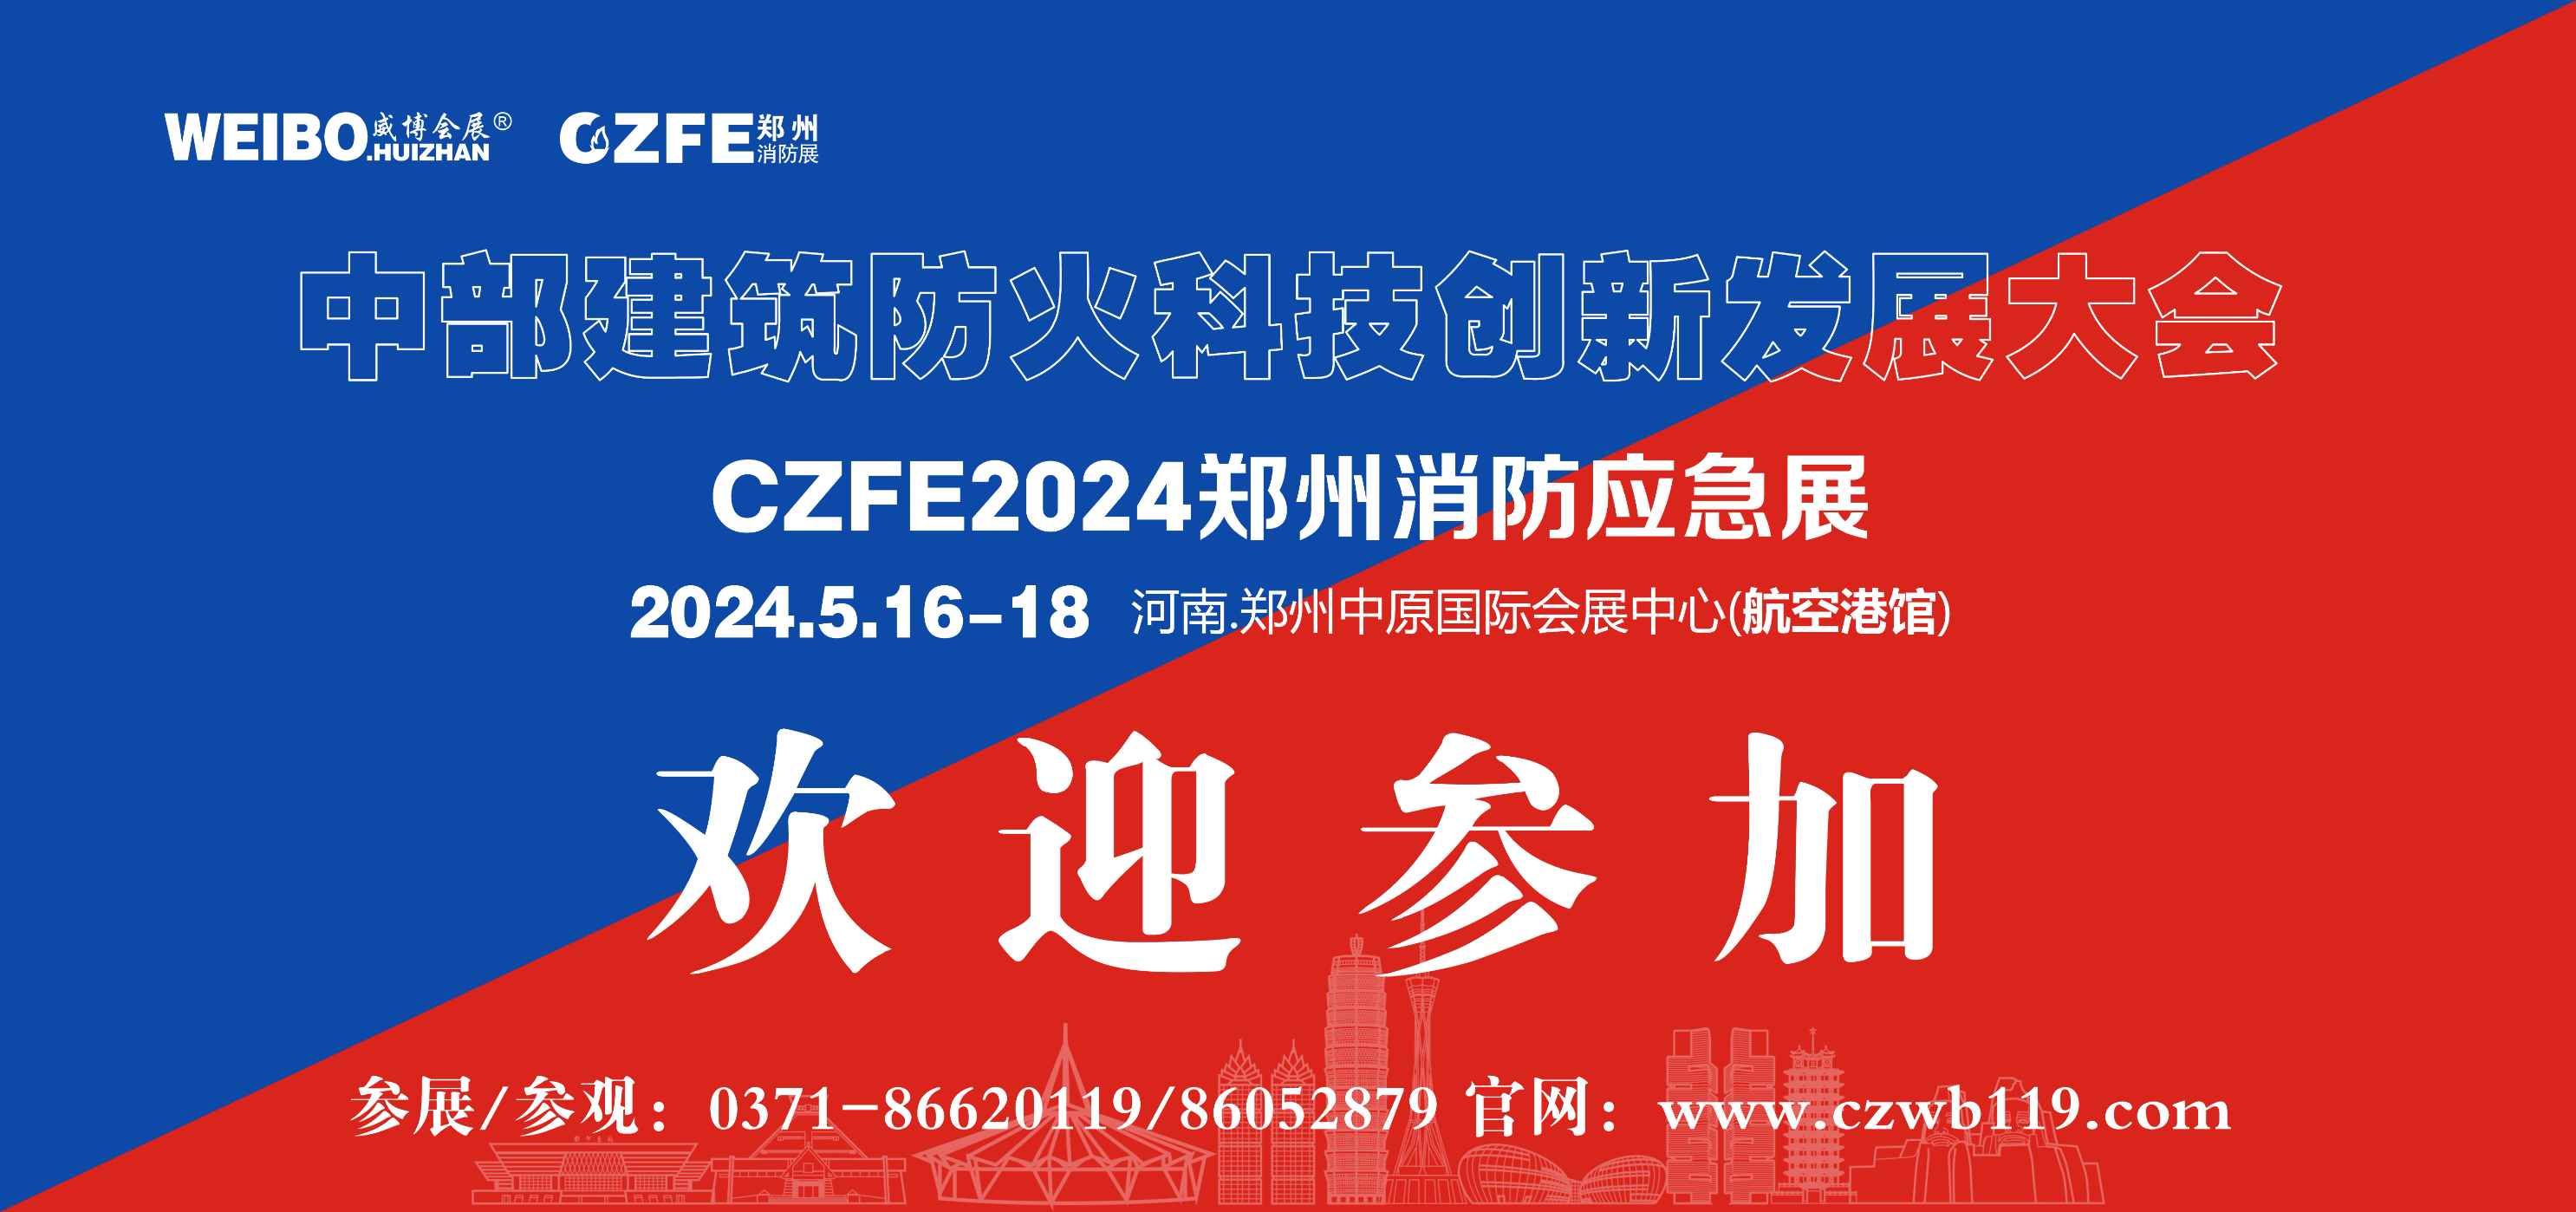 2024应急安全博览会|2024CZFE郑州消防展